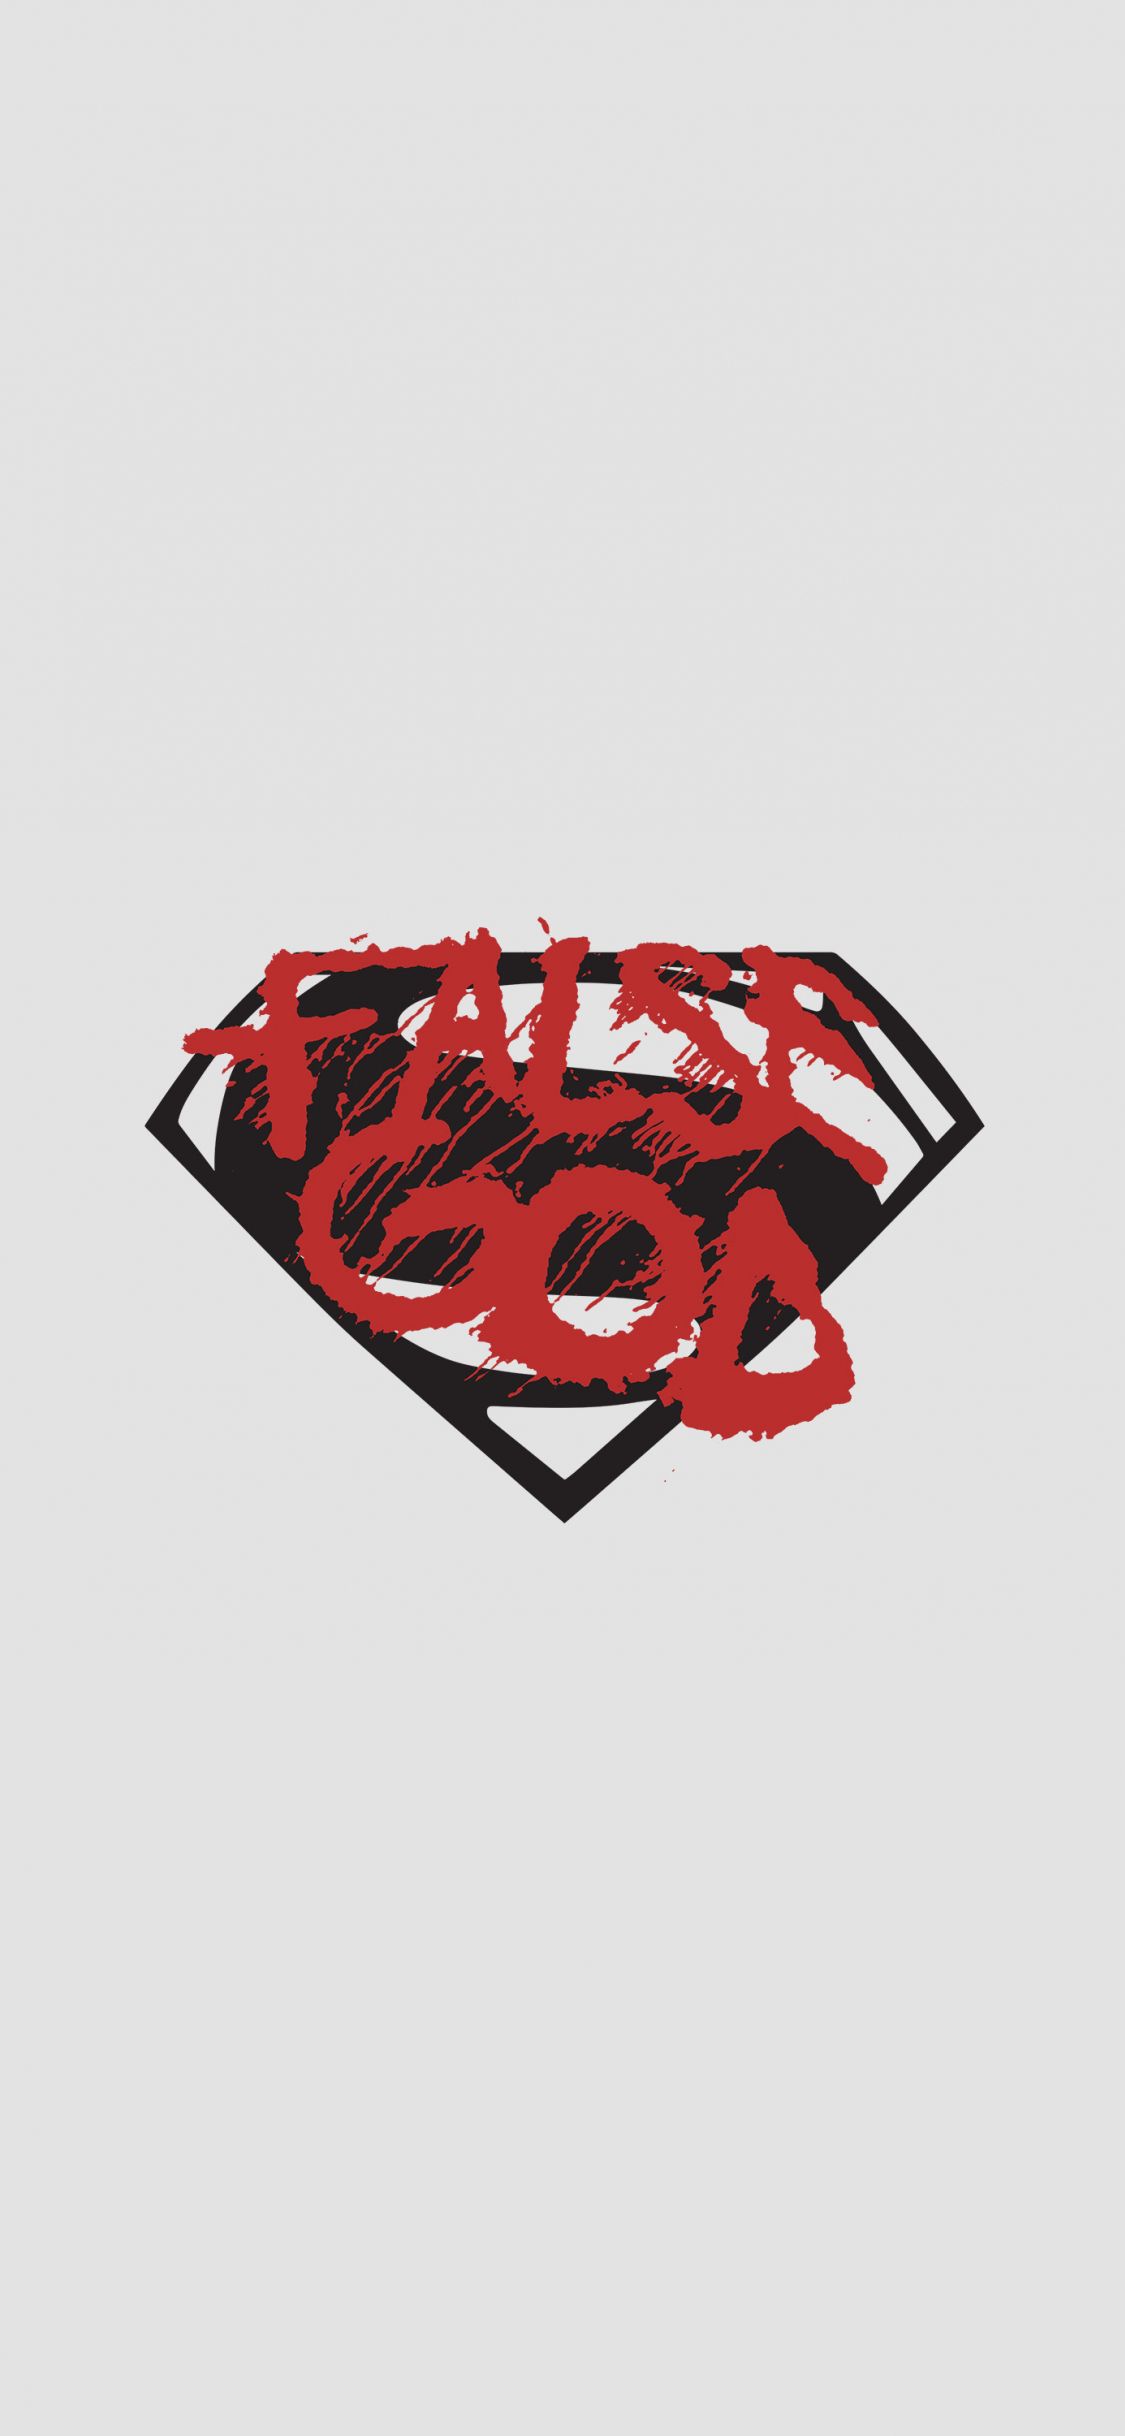 Download 1125x2436 wallpaper false god, batman vs superman